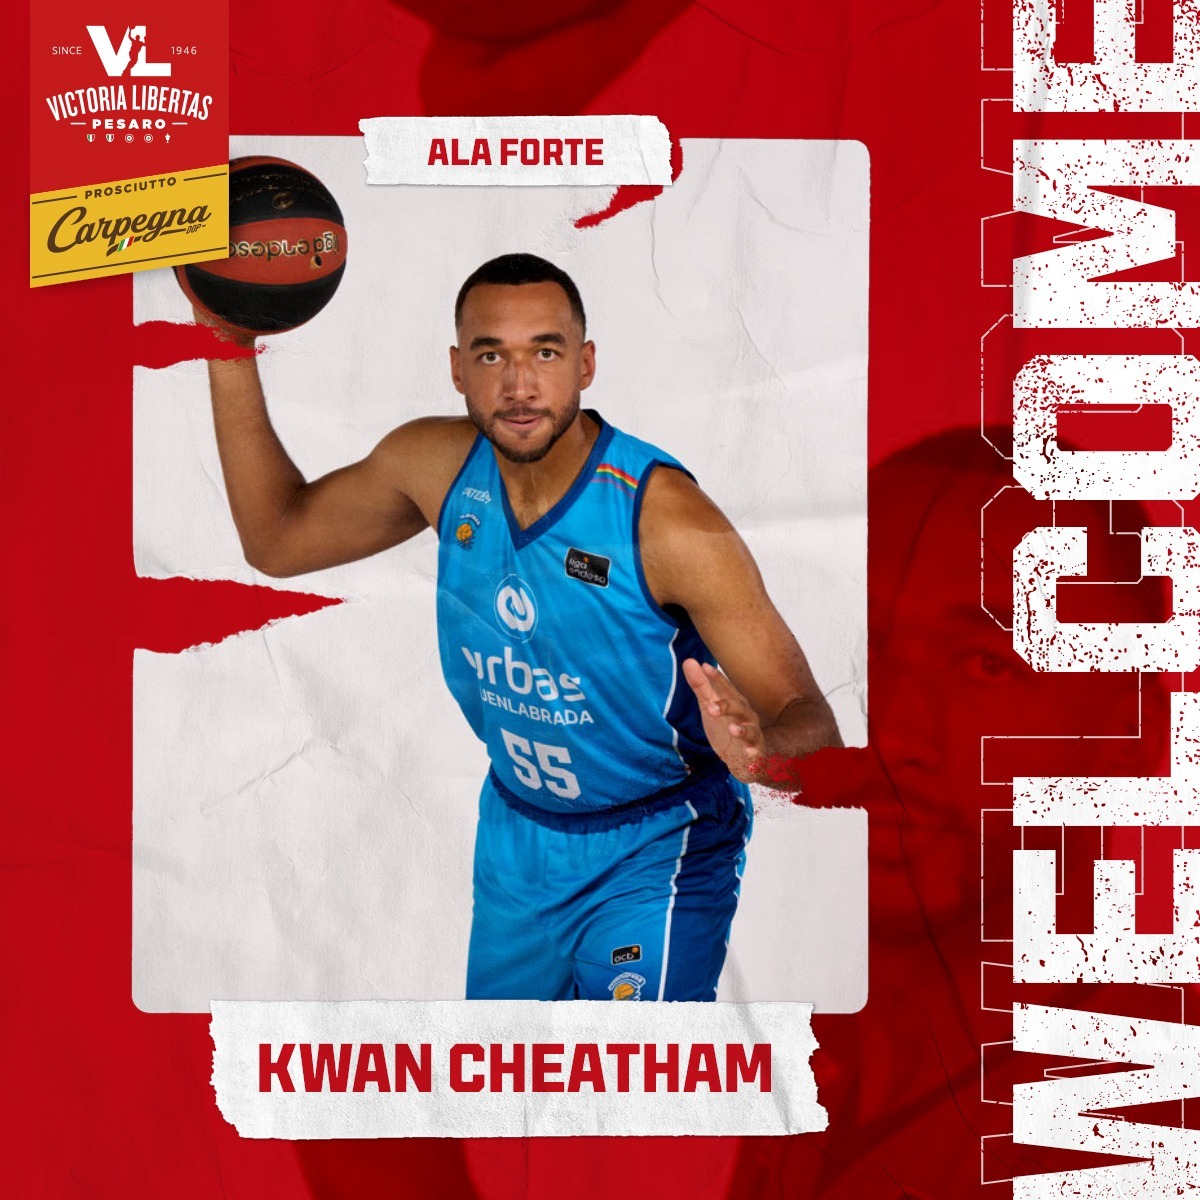 Nuova ala forte: Kwan Cheatham